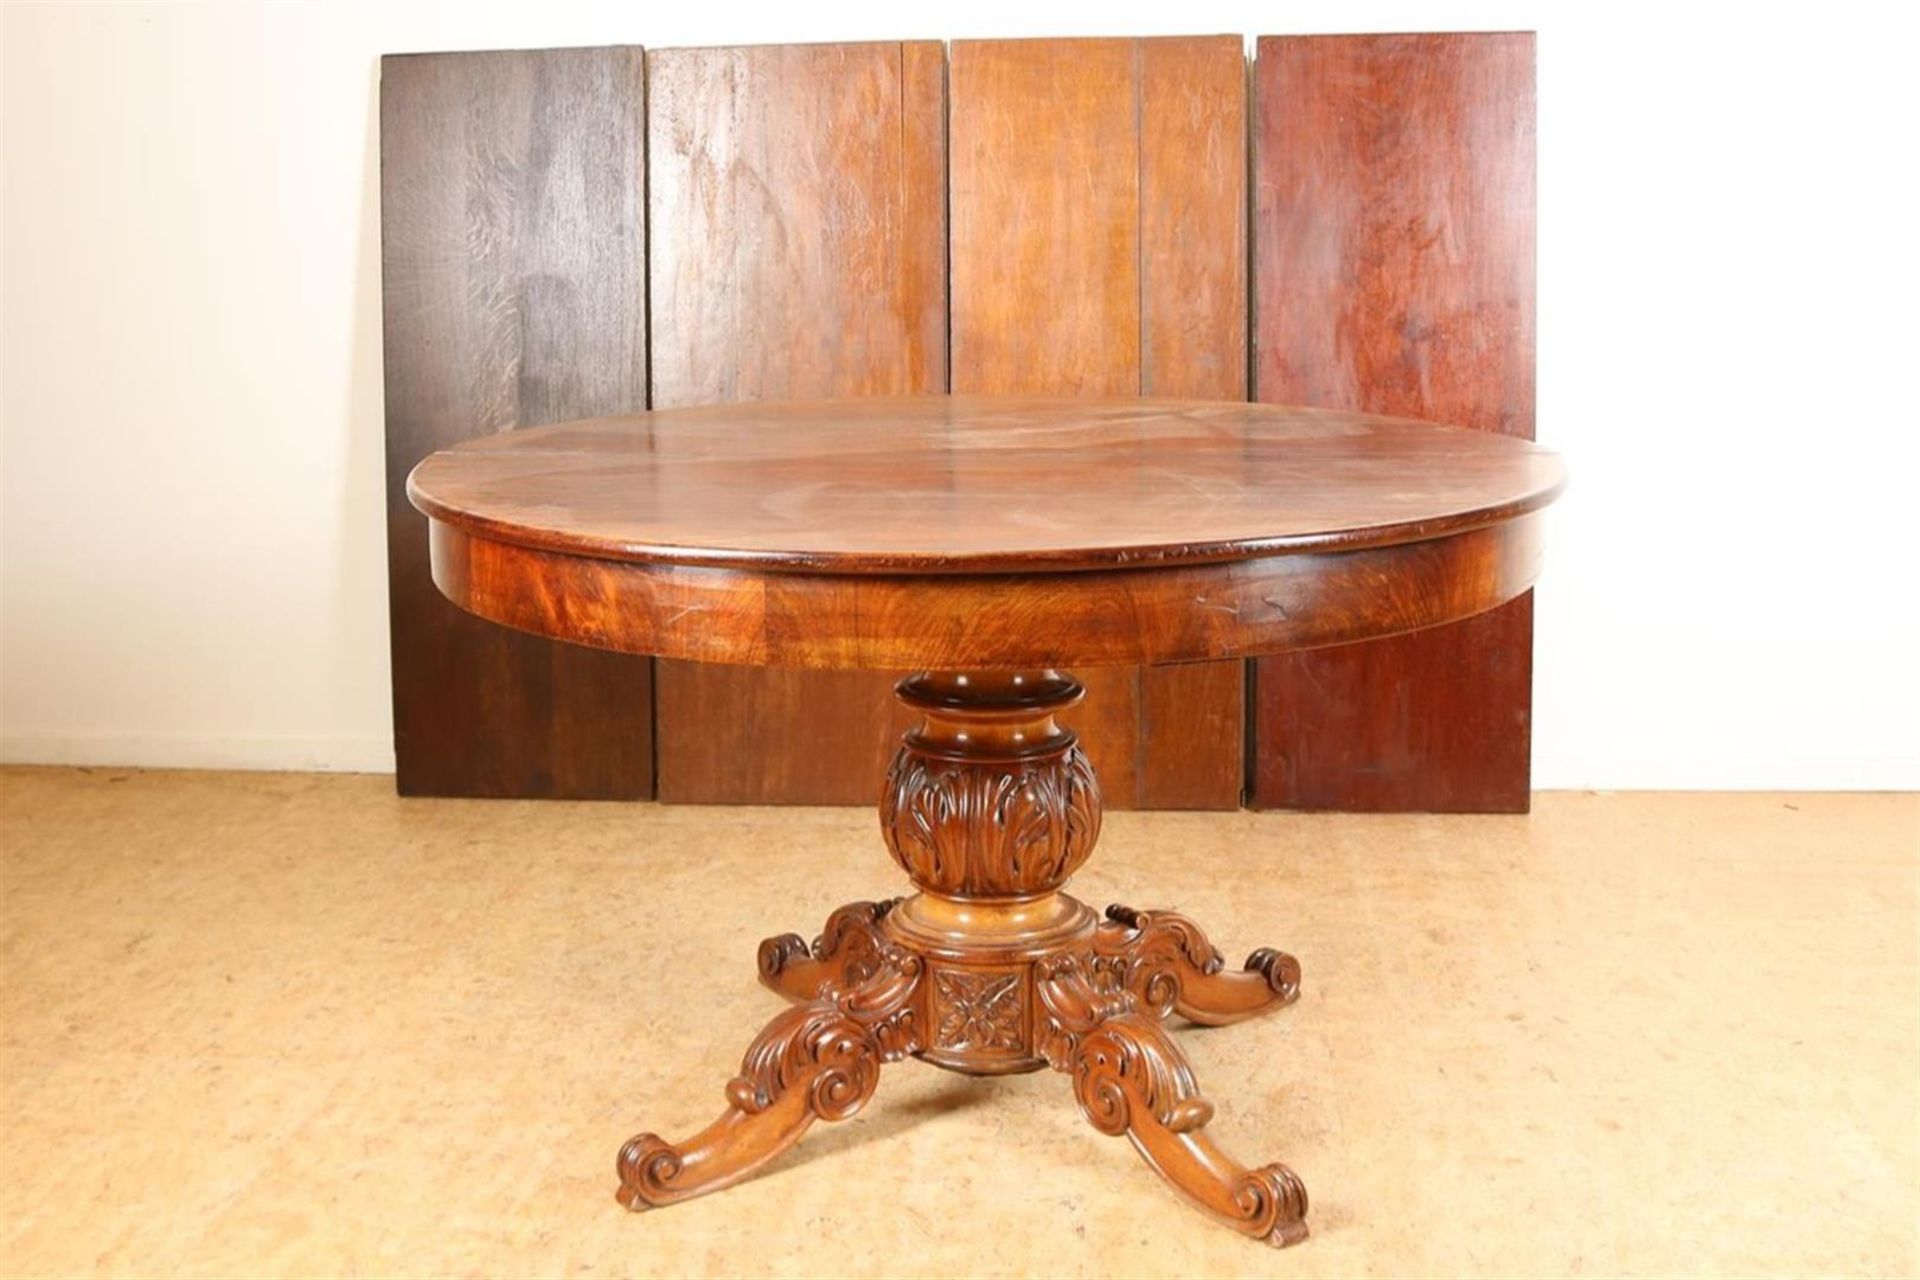 Mahogany wings table